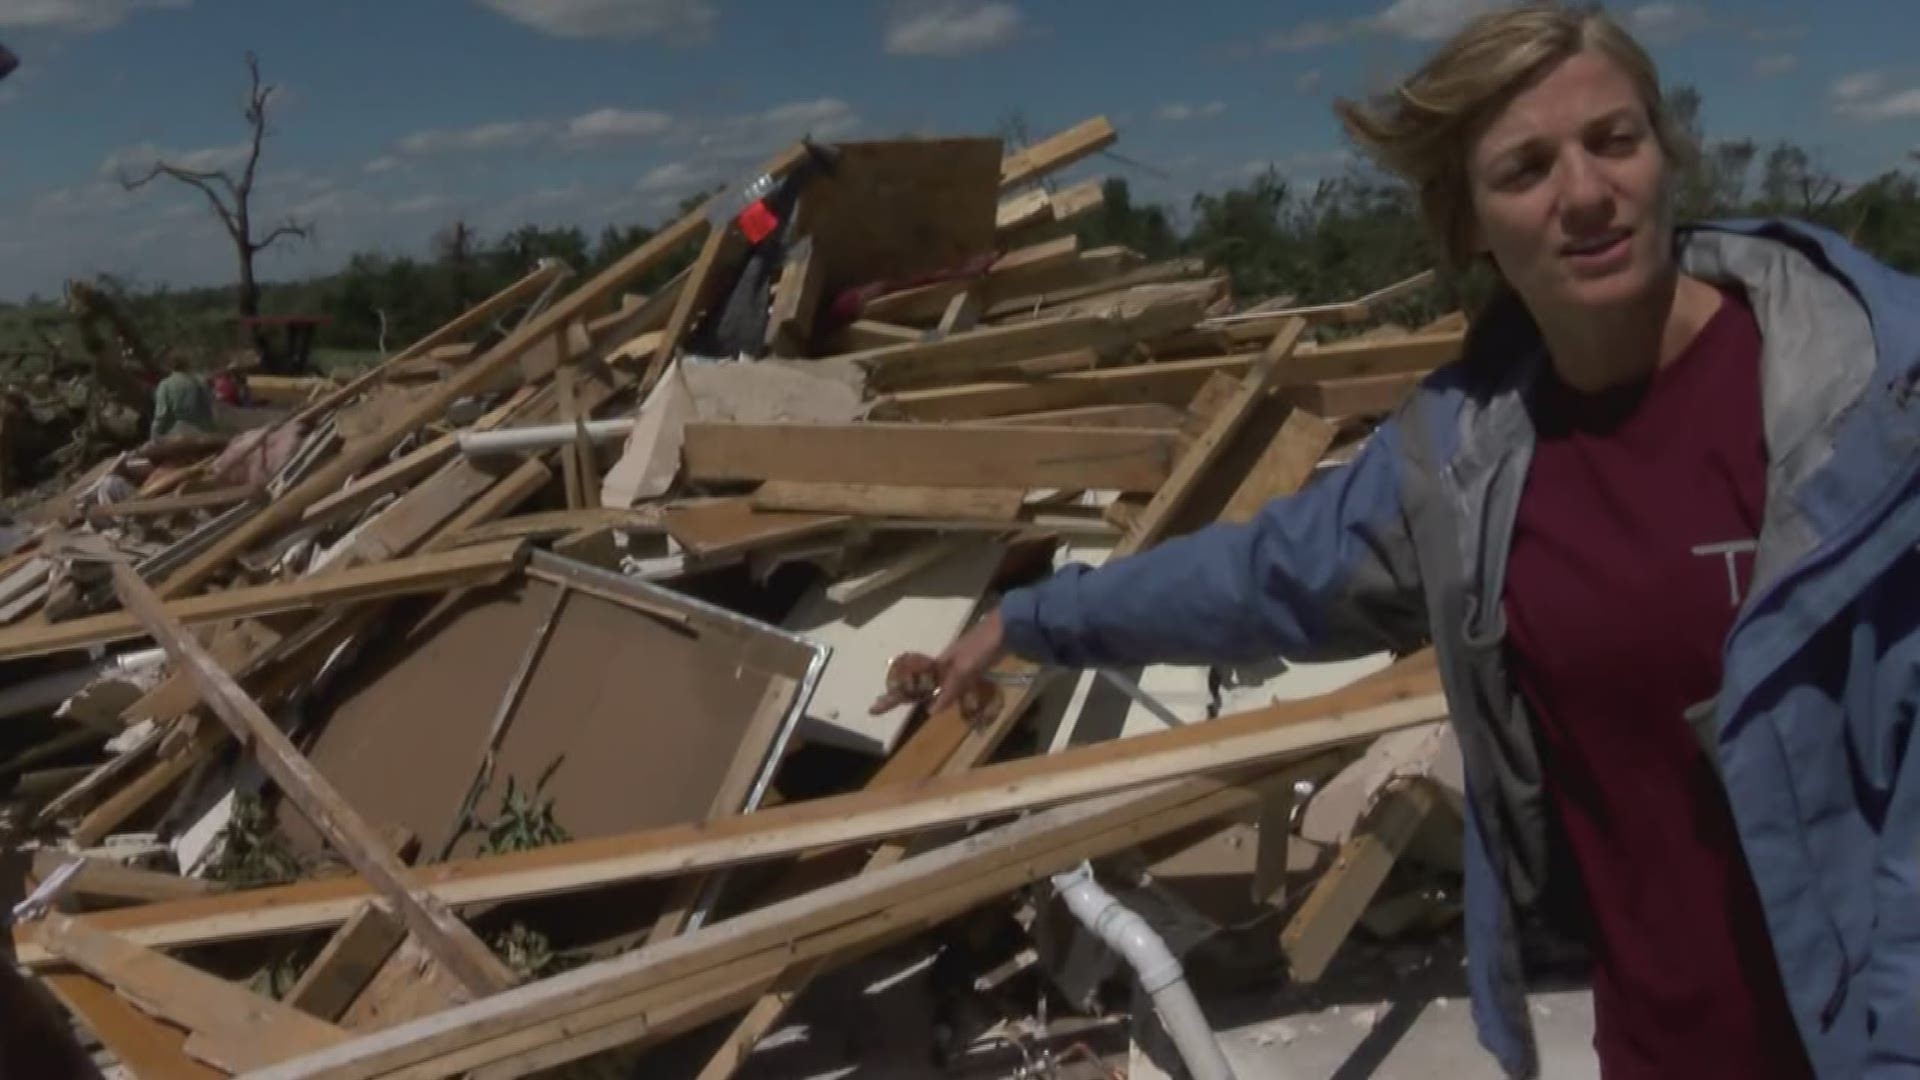 Homeowners in Van Zandt County survive tornado by hiding in closet 